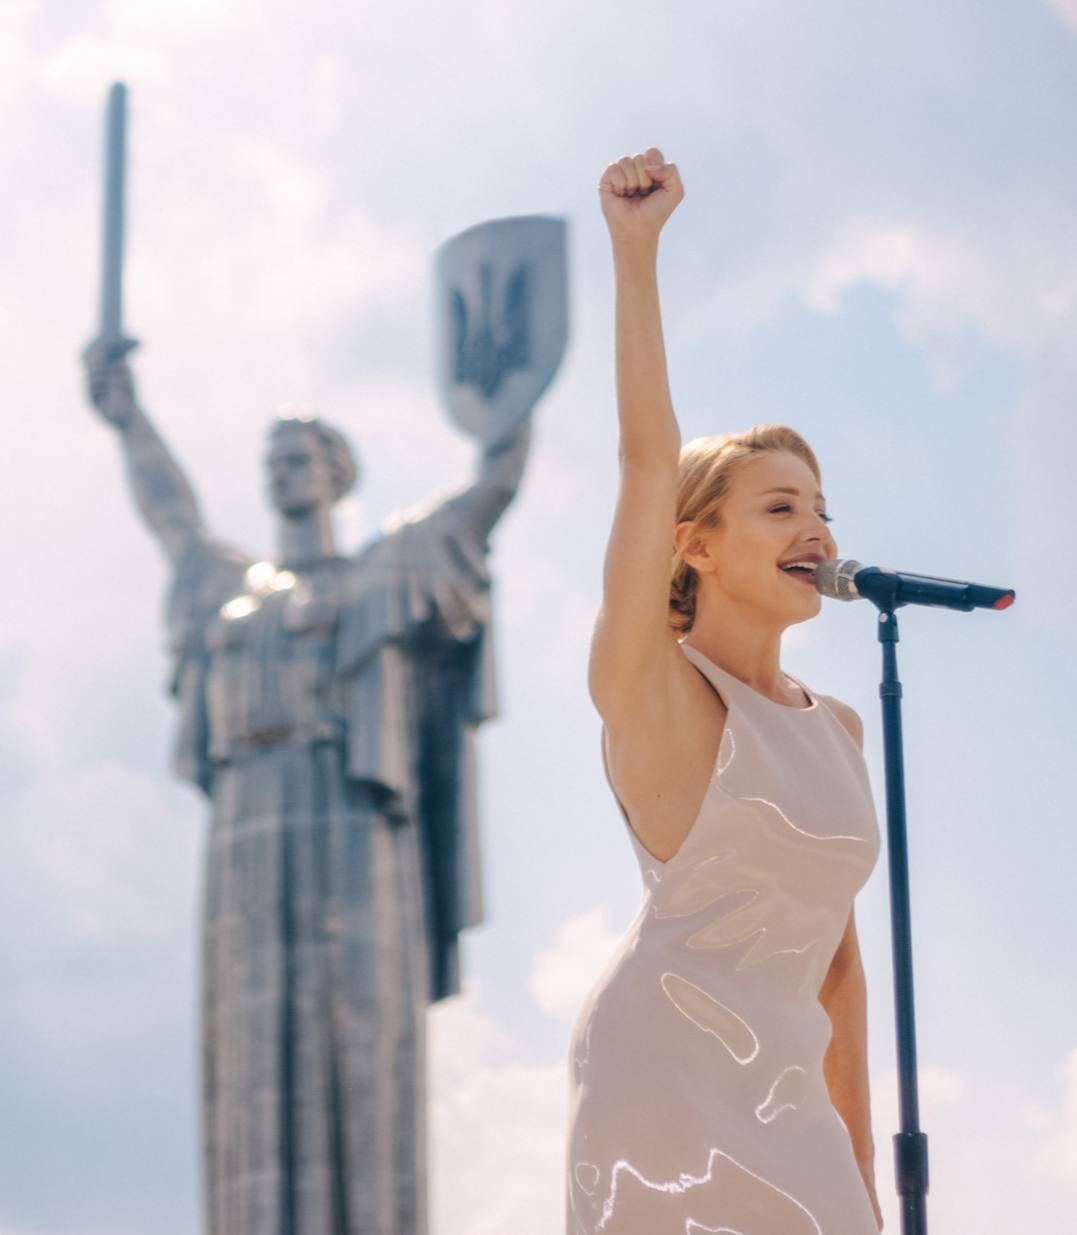 24 серпня у День Незалежності України Тіна Кароль та Дайан Уоррен презентували пісню під назвою «One nation under love»